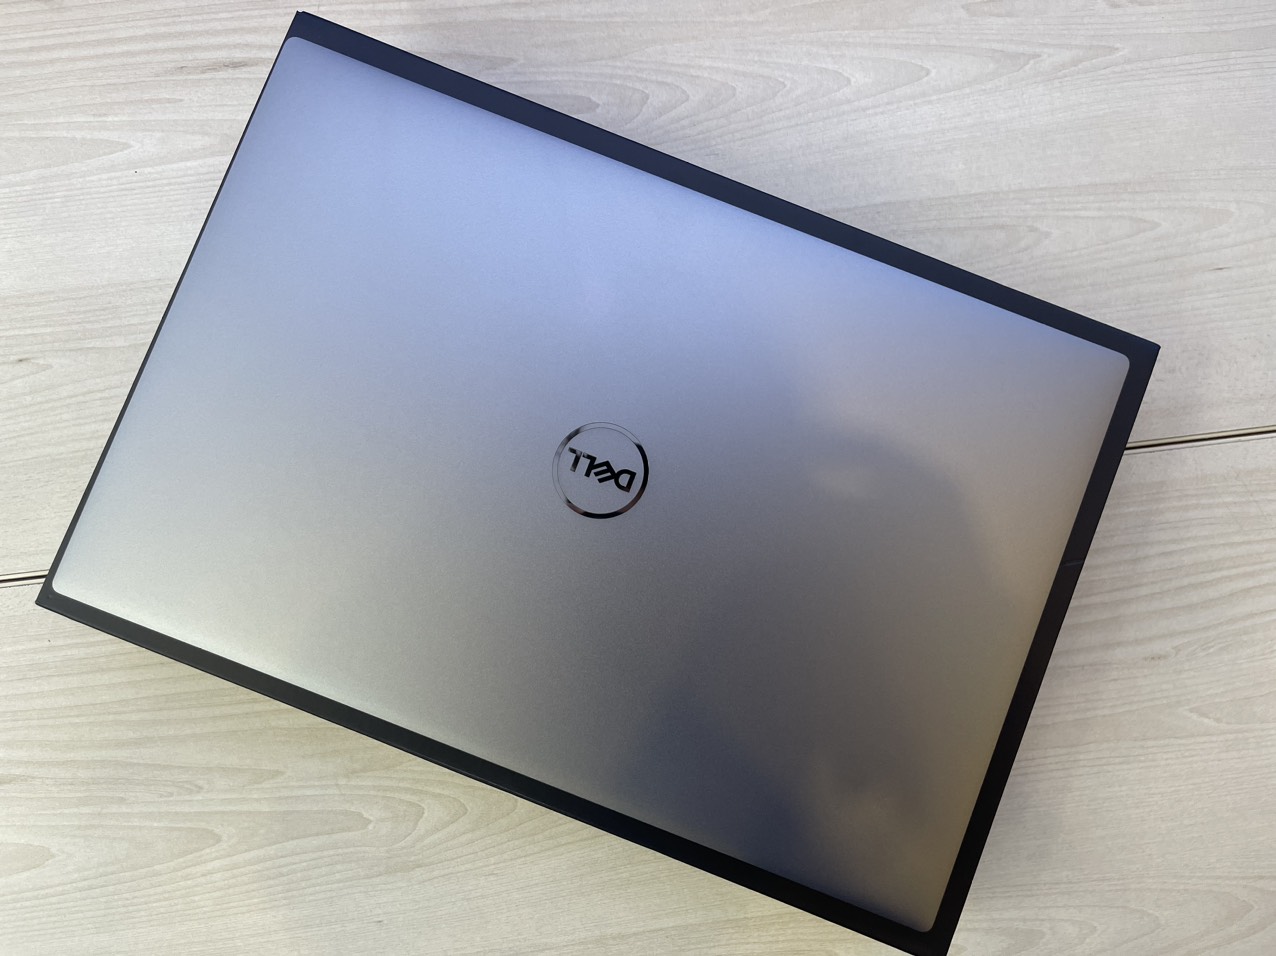 Dell Precision 5570 thiết kế mỏng nhẹ như chiếc Ultrabook